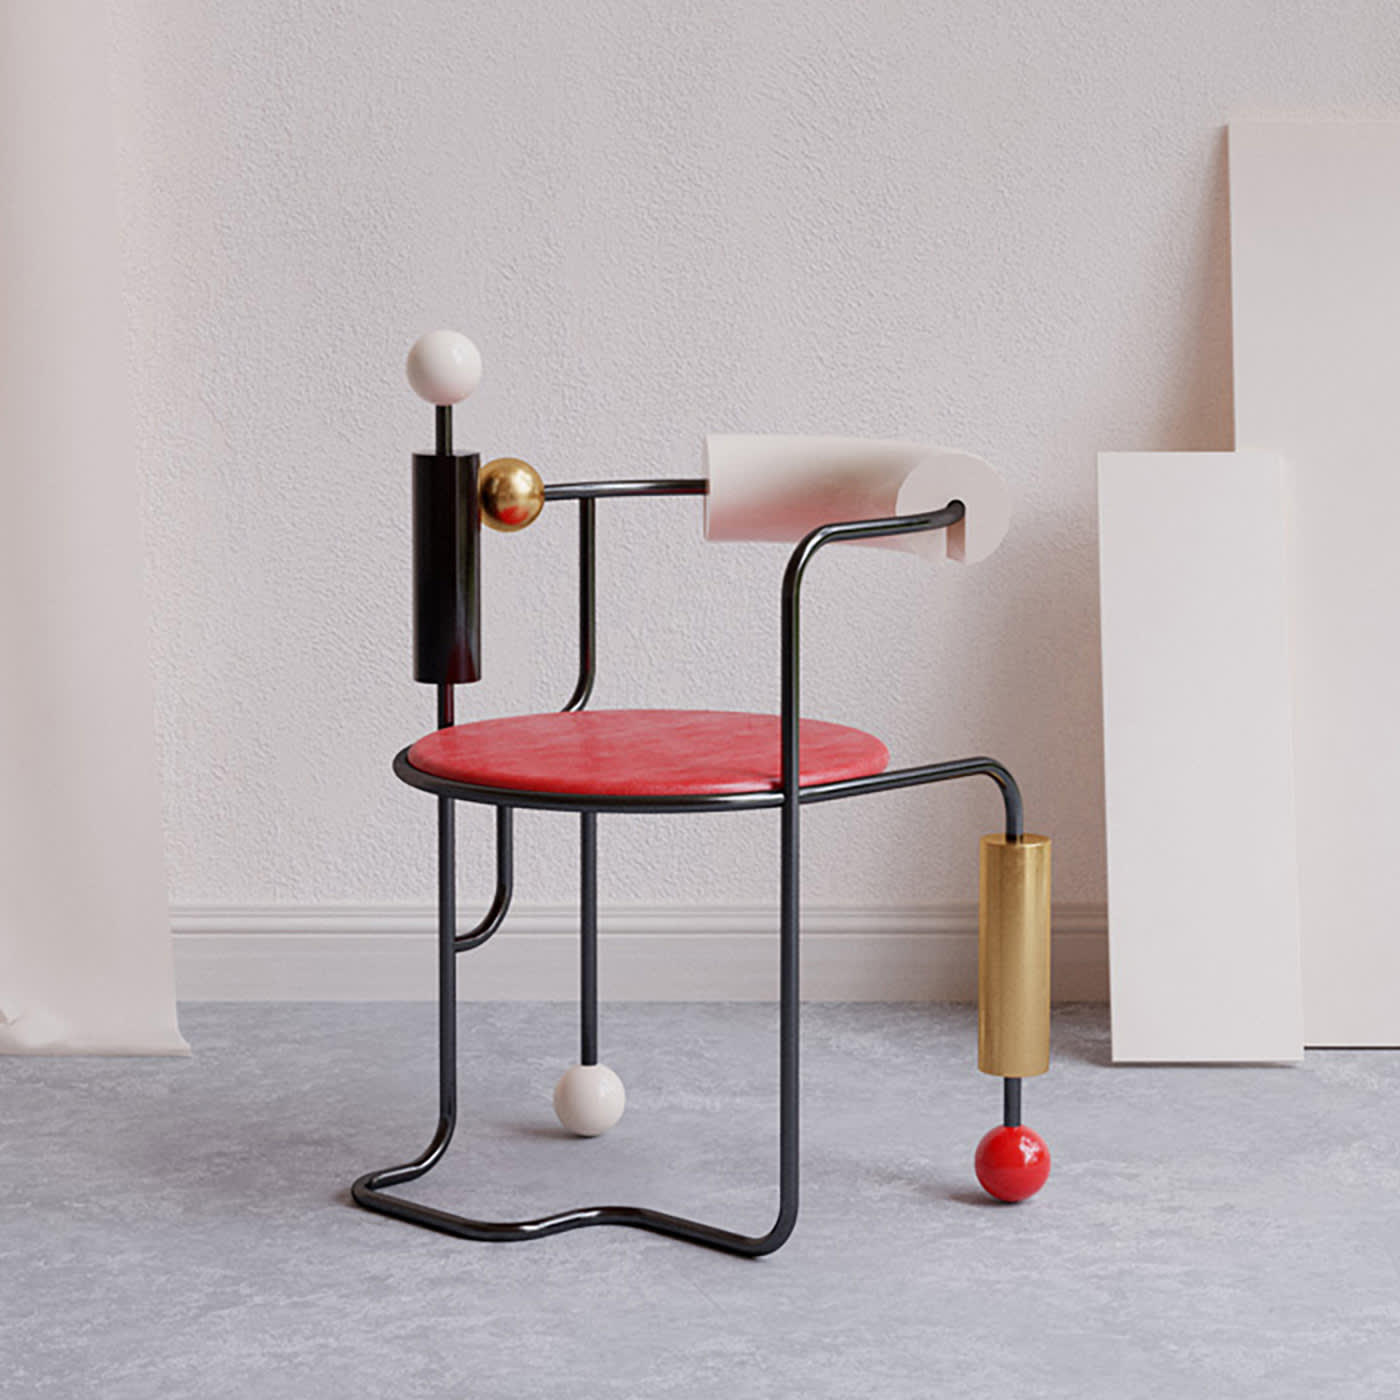 Morse Polychrome Chair #1 - Le Dictateur